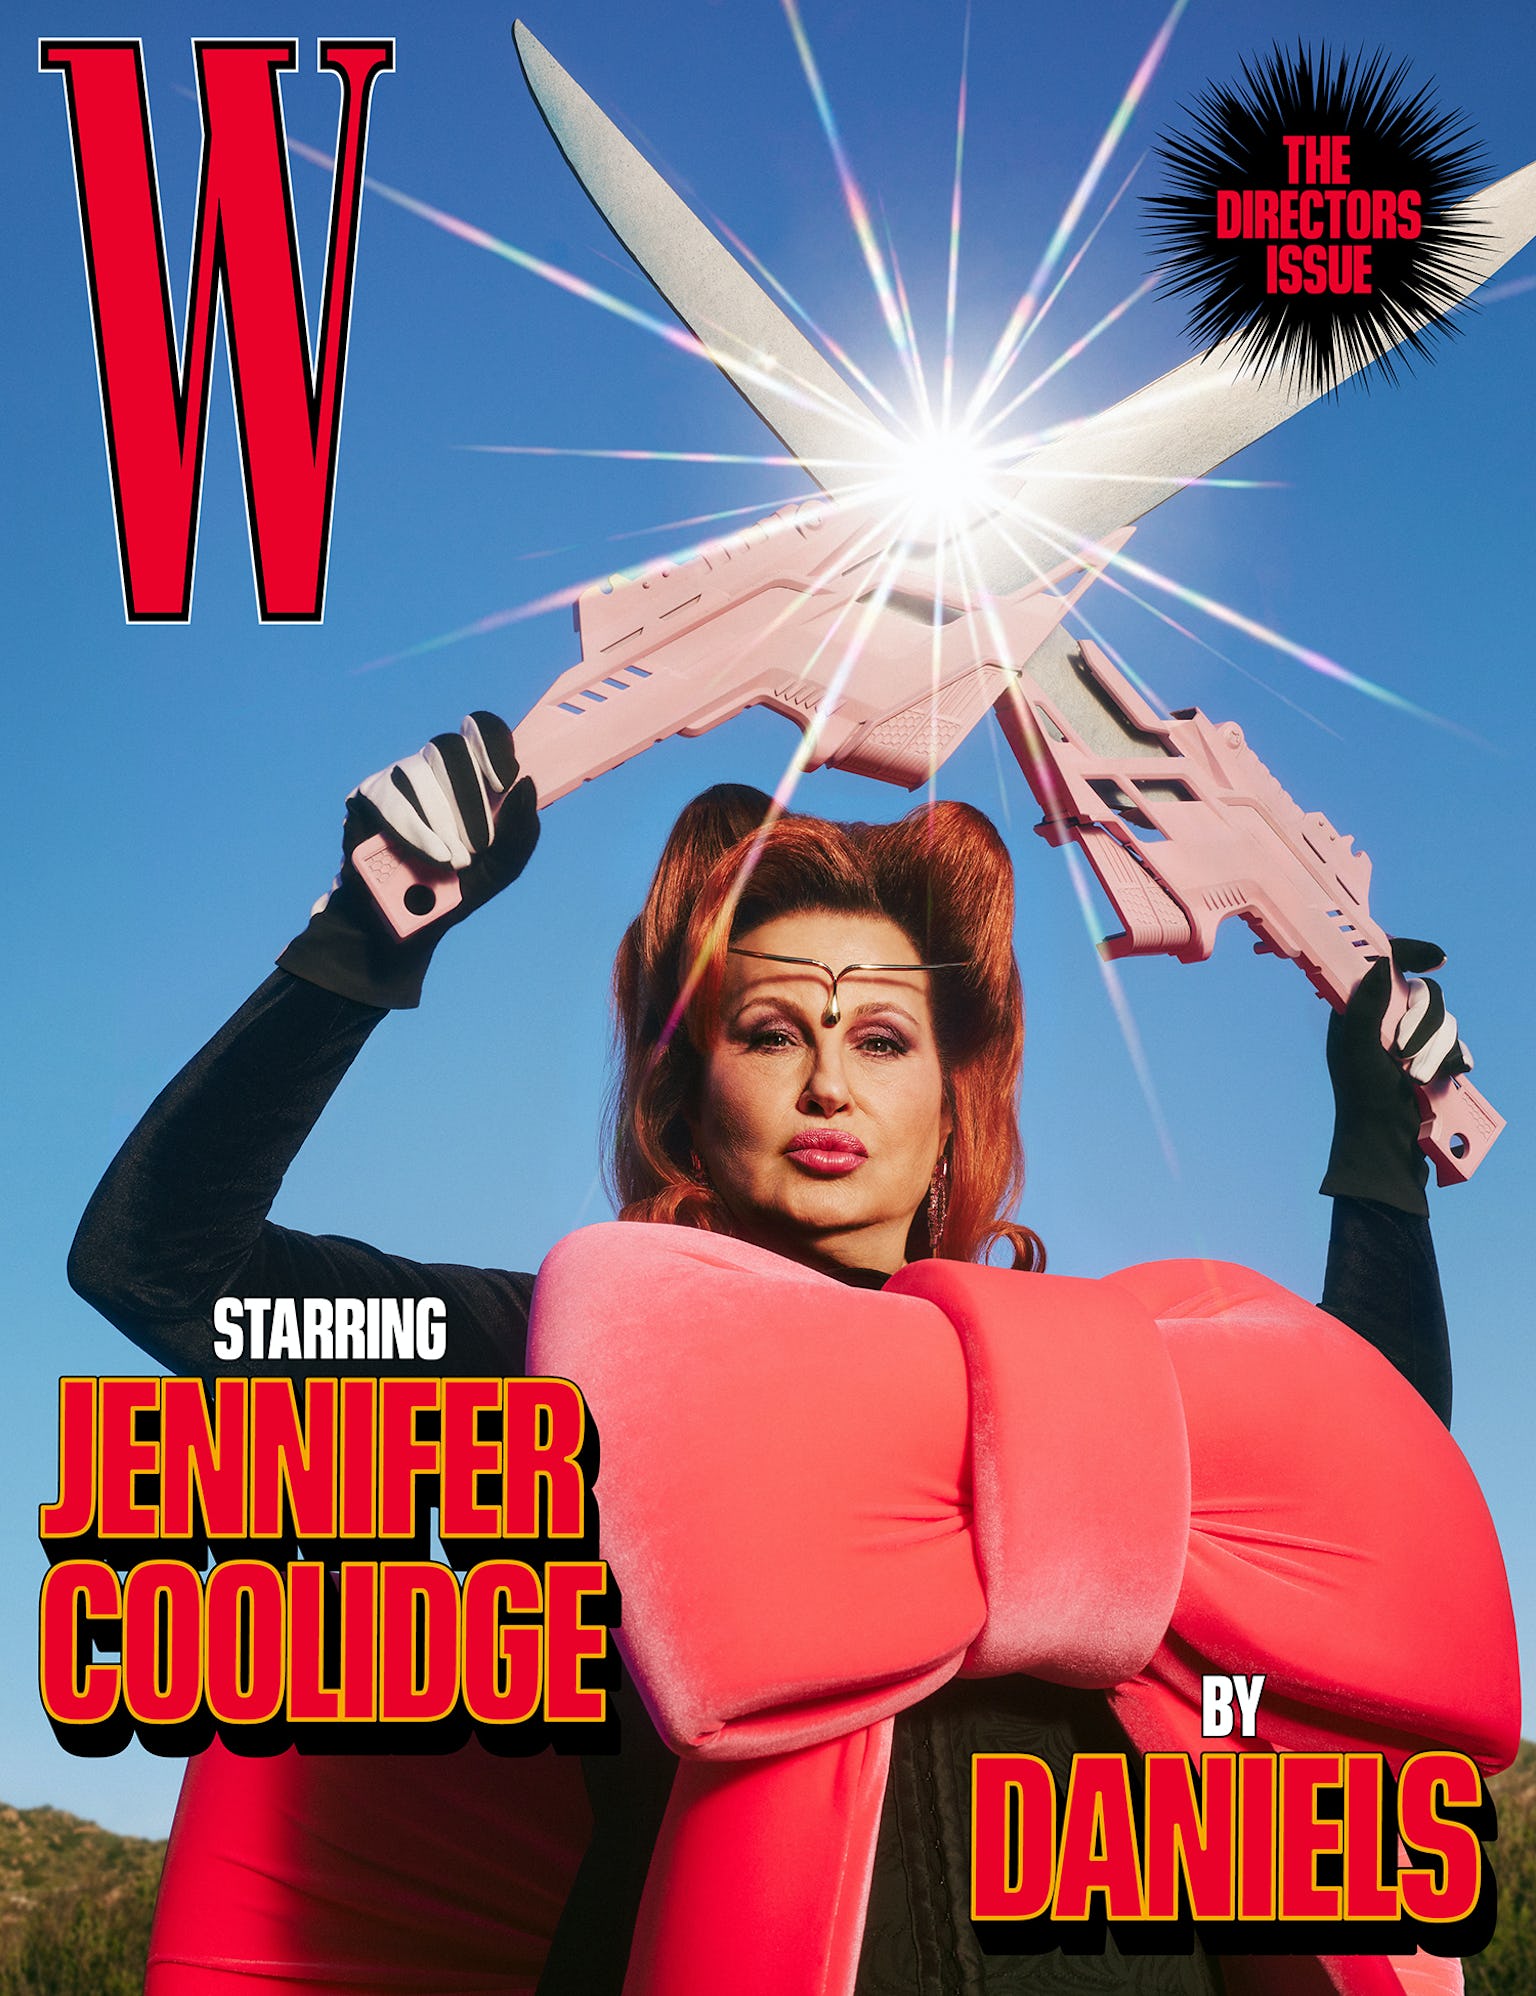 Дженнифер Кулидж снялась для обложки журнала W